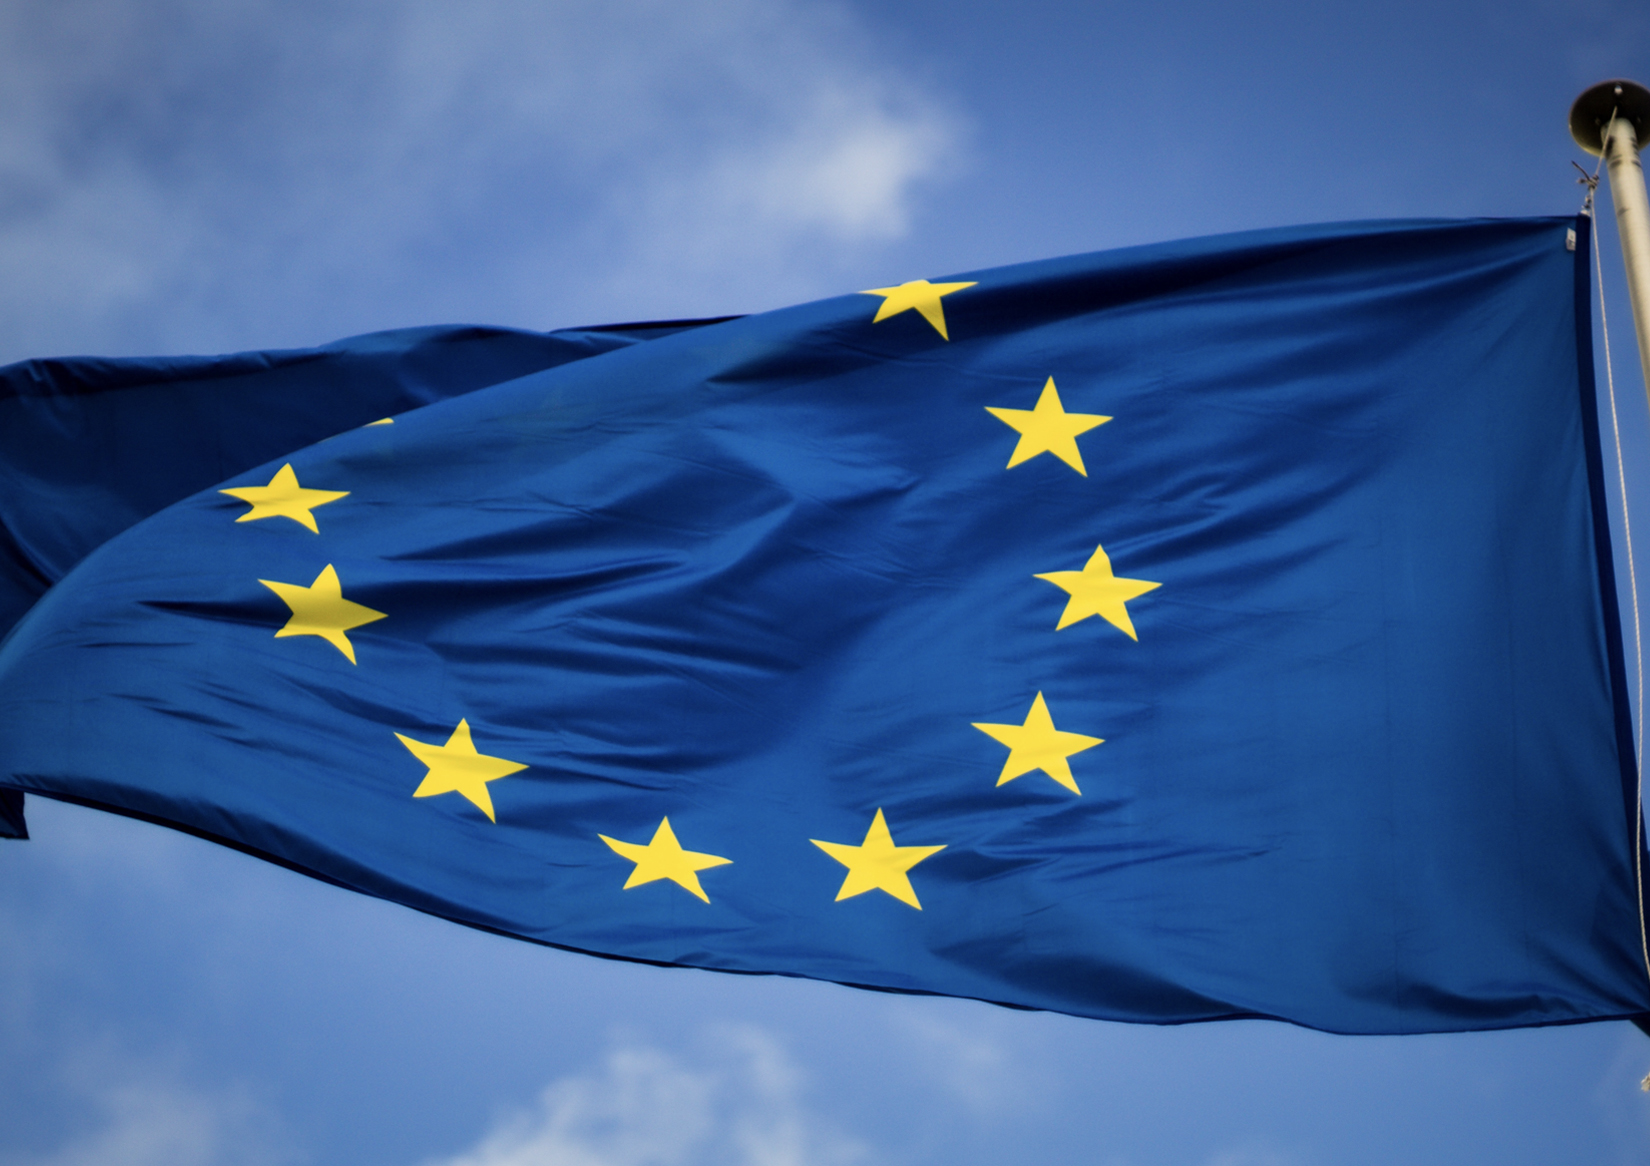 EU-Flag-by-Christian-Lue